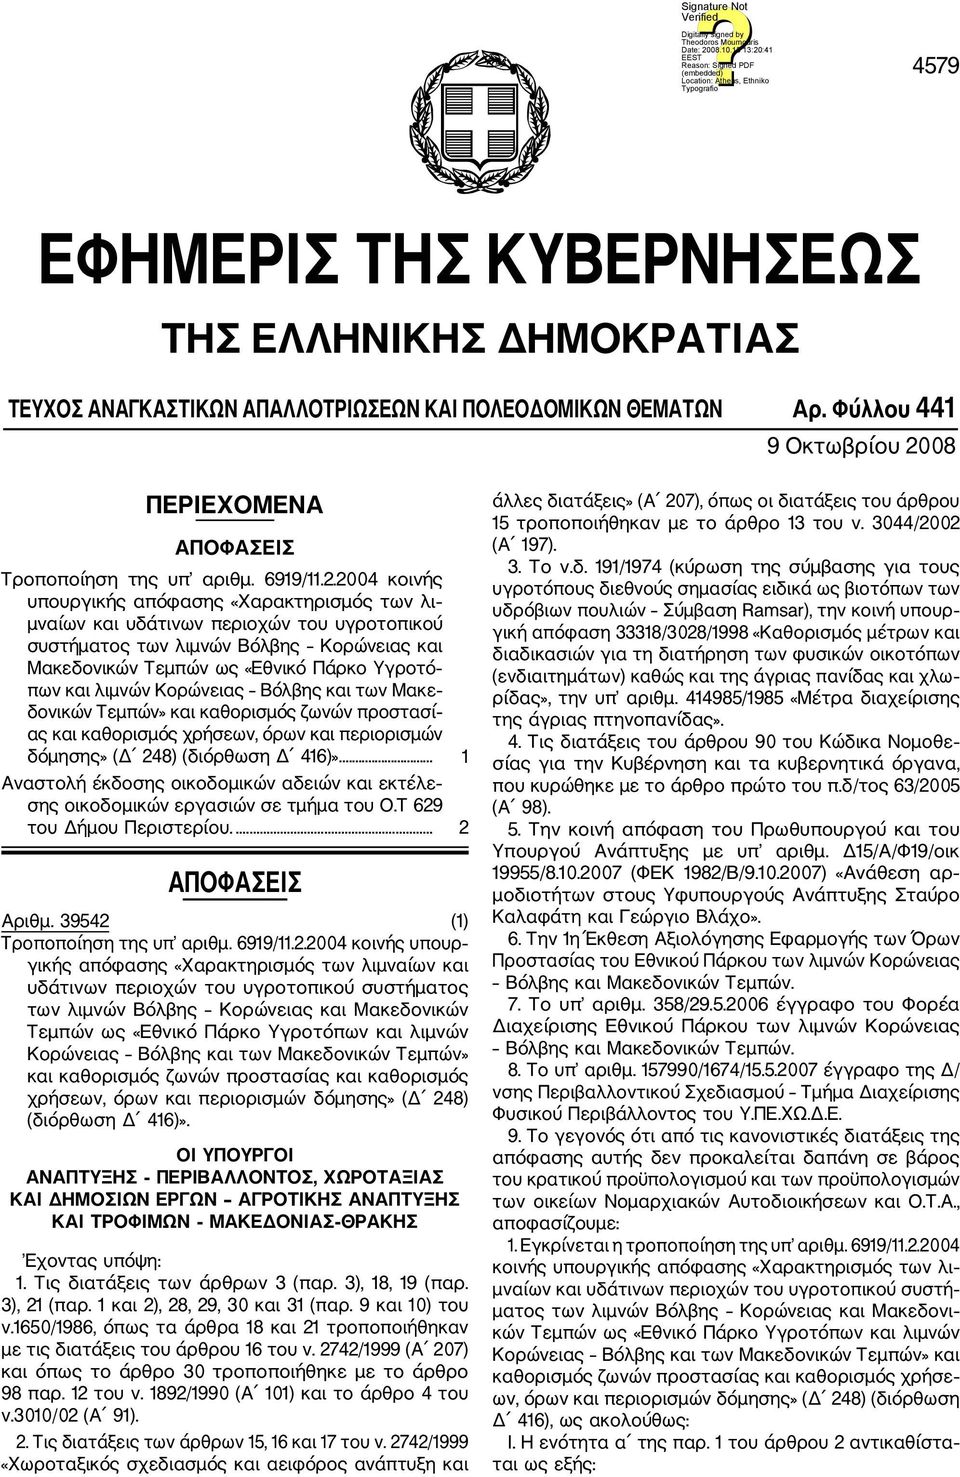 2004 κοινής υπουργικής απόφασης «Χαρακτηρισμός των λι μναίων και υδάτινων περιοχών του υγροτοπικού συστήματος των λιμνών Βόλβης Κορώνειας και Μακεδονικών Τεμπών ως «Εθνικό Πάρκο Υγροτό πων και λιμνών